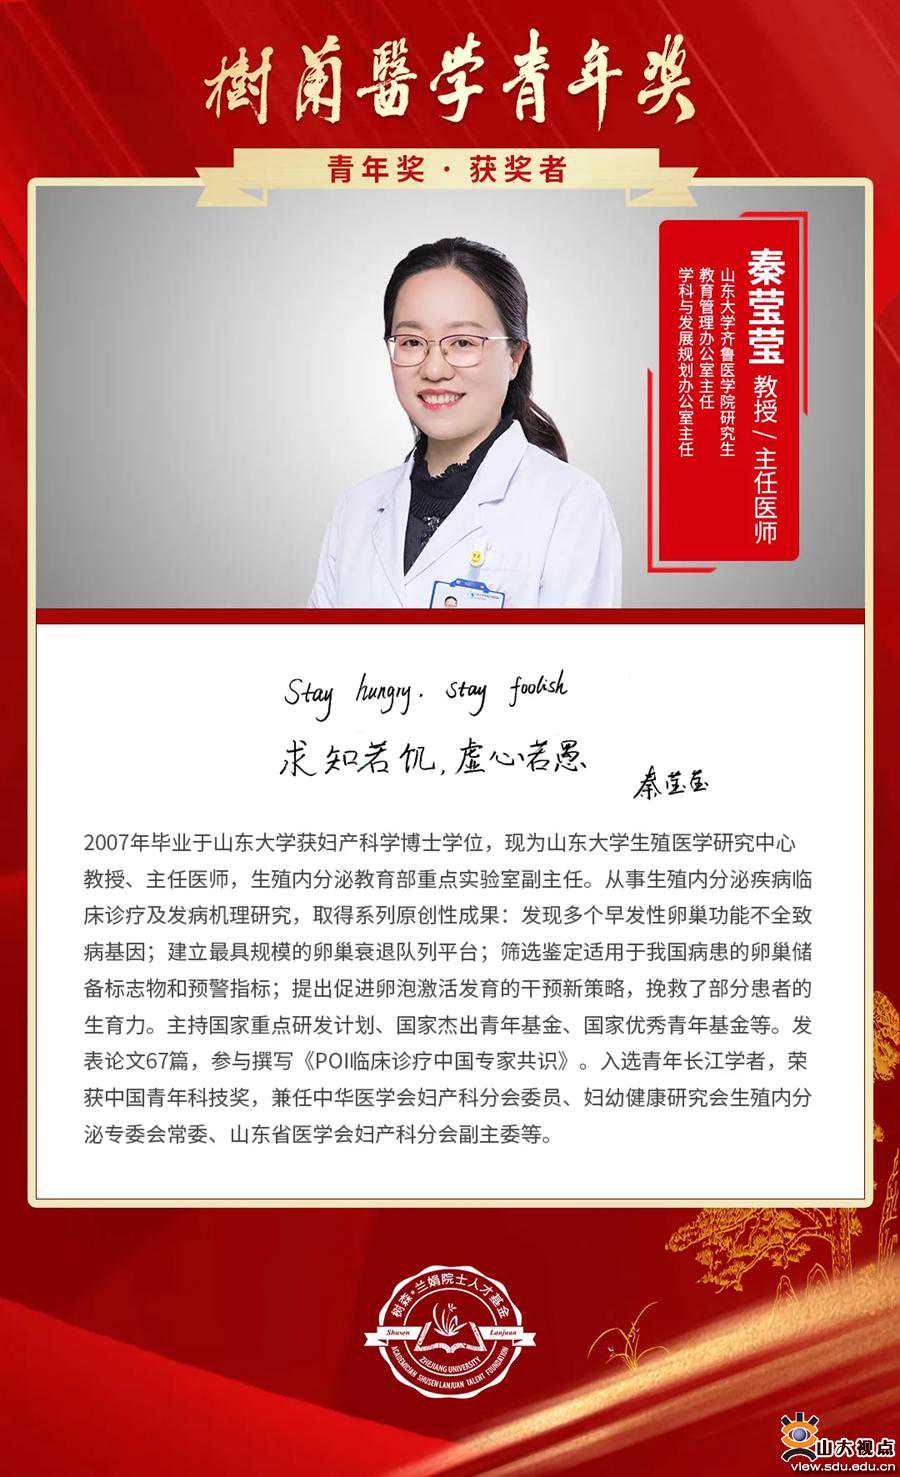 秦莹莹教授荣获第八届树兰医学青年奖